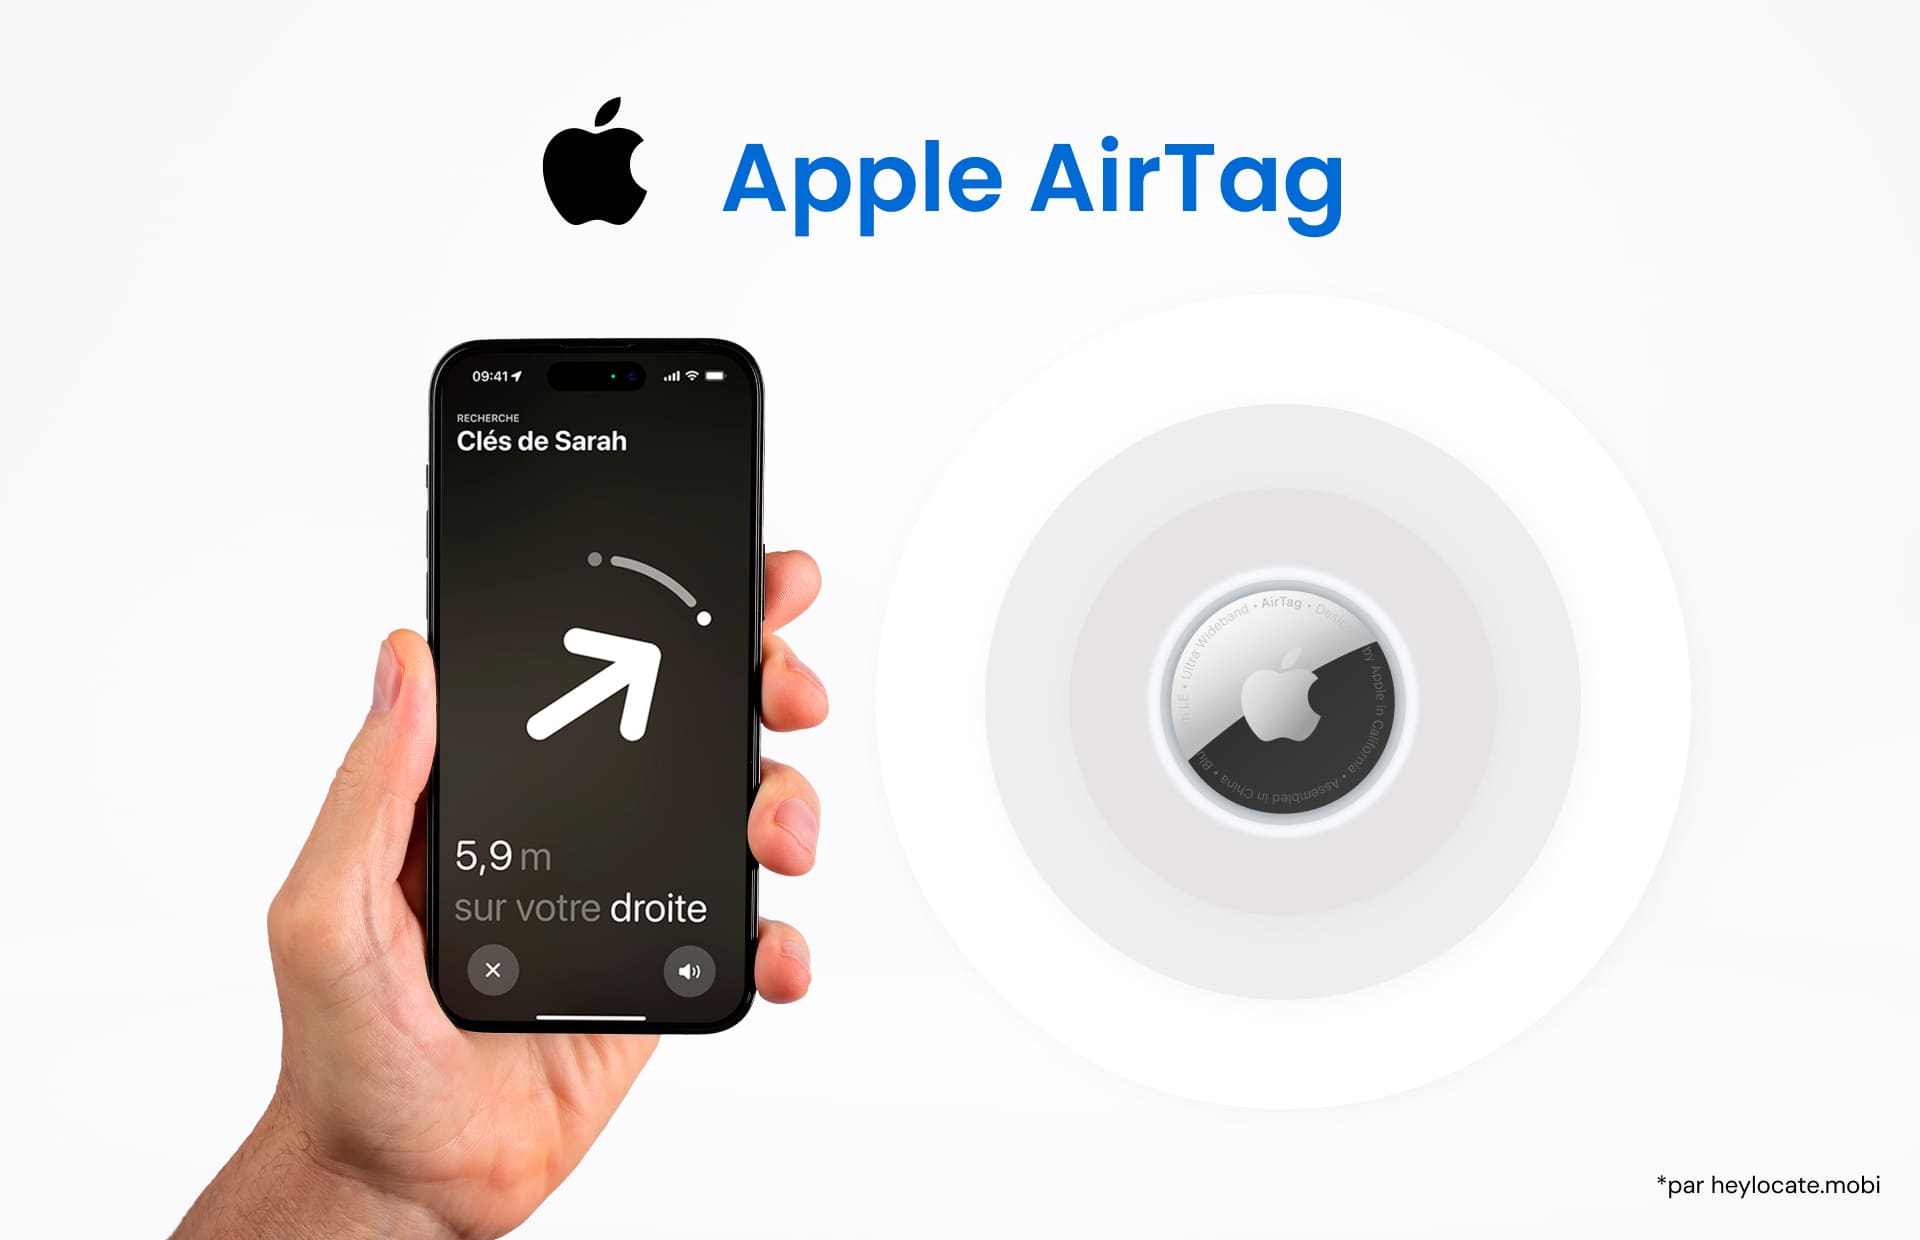 Une image montrant une main tenant un iPhone avec l'interface de suivi Apple AirTag sur l'écran, et un Apple AirTag illustrant la fonction de suivi de l'appareil